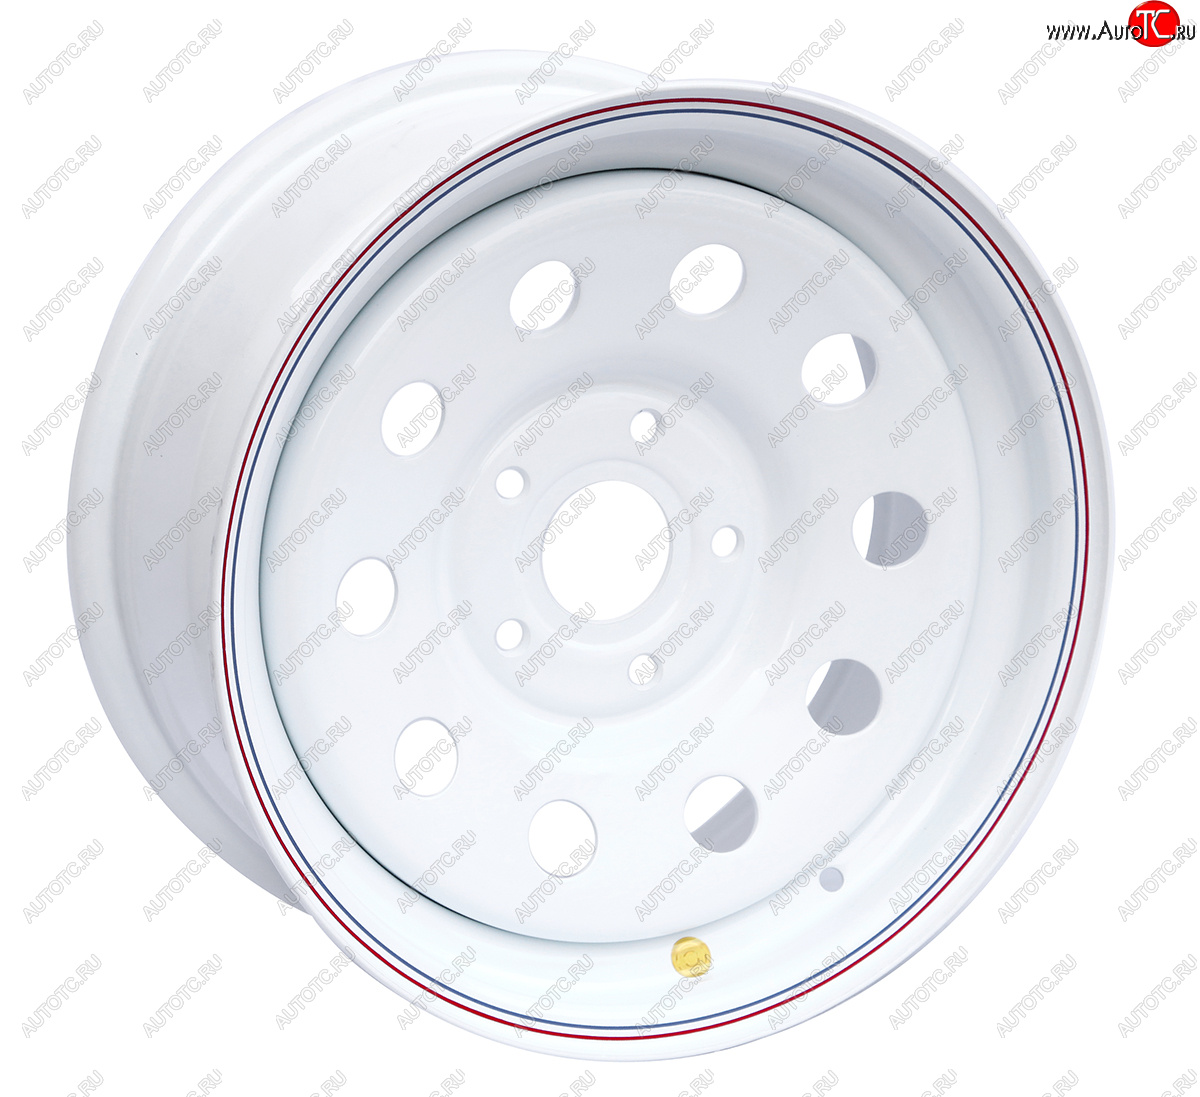 5 699 р. Штампованый диск OFF-ROAD Wheels (усиленный, круг) 7.0x16 BMW 5 серия E60 седан рестайлинг (2007-2010) 5x120.0xDIA72.6xET20.0 (Цвет: белый)